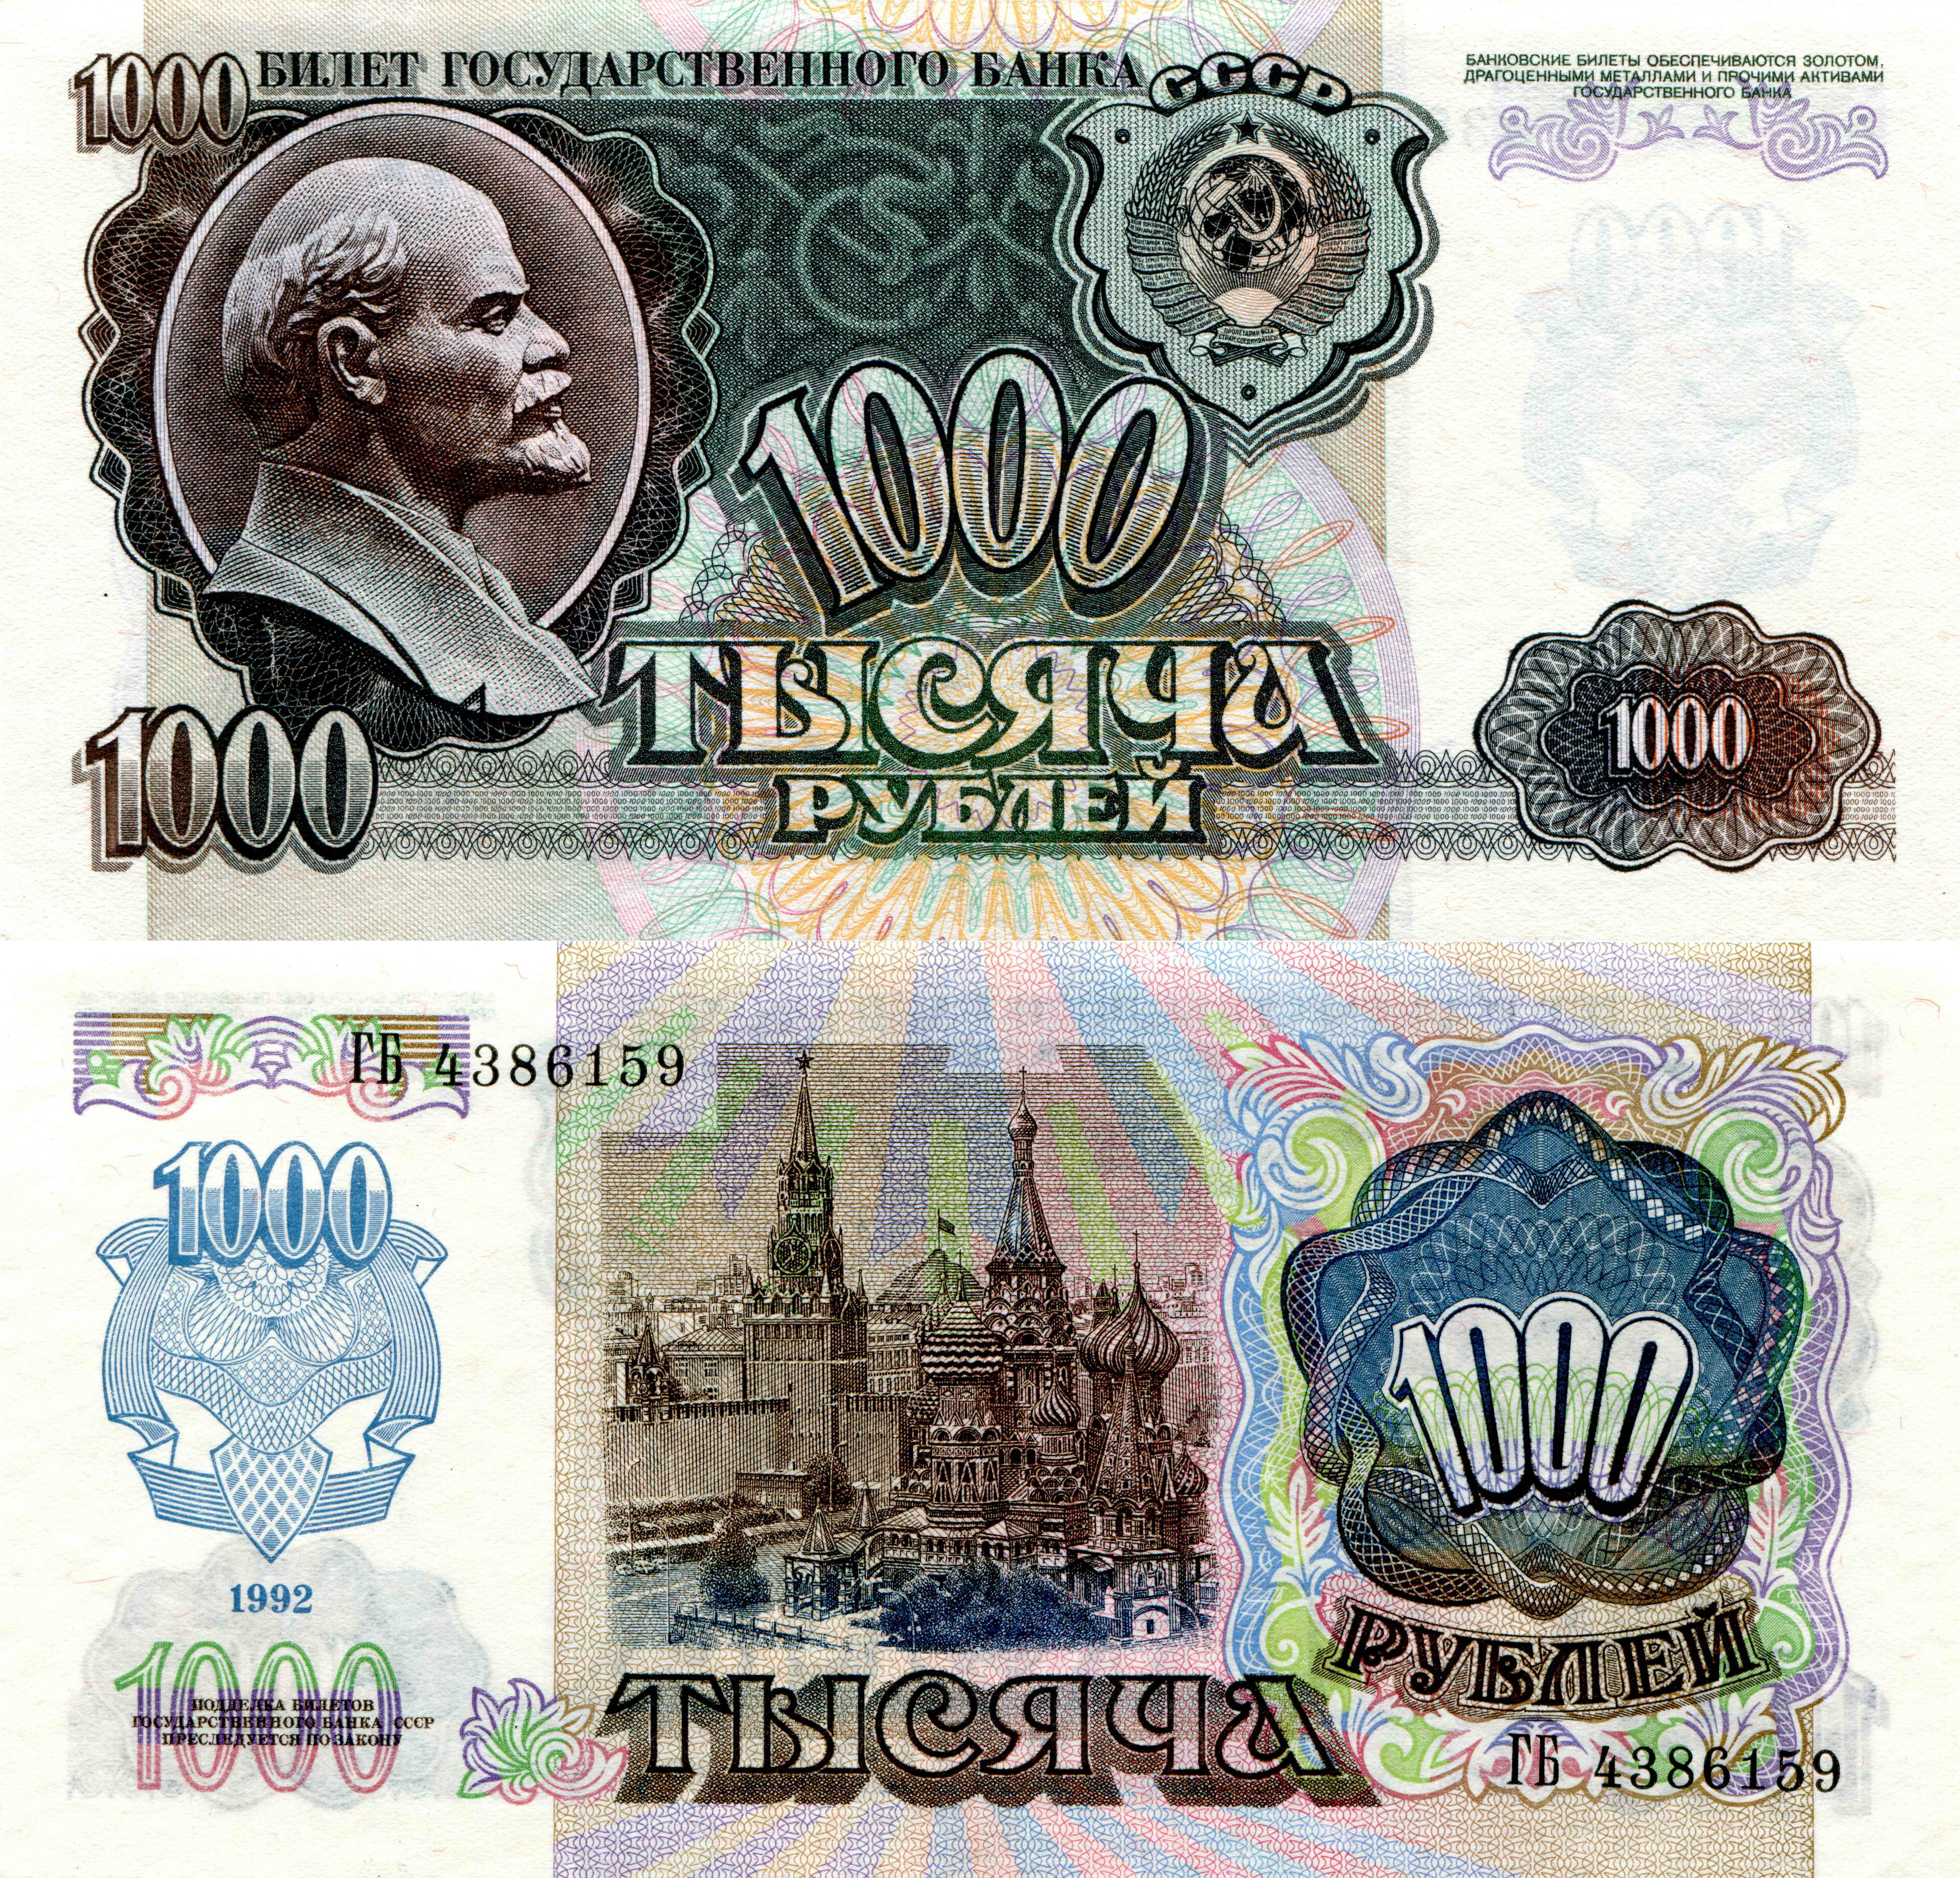 Фотографии Рубли Купюры 1000 1992 Деньги Банкноты